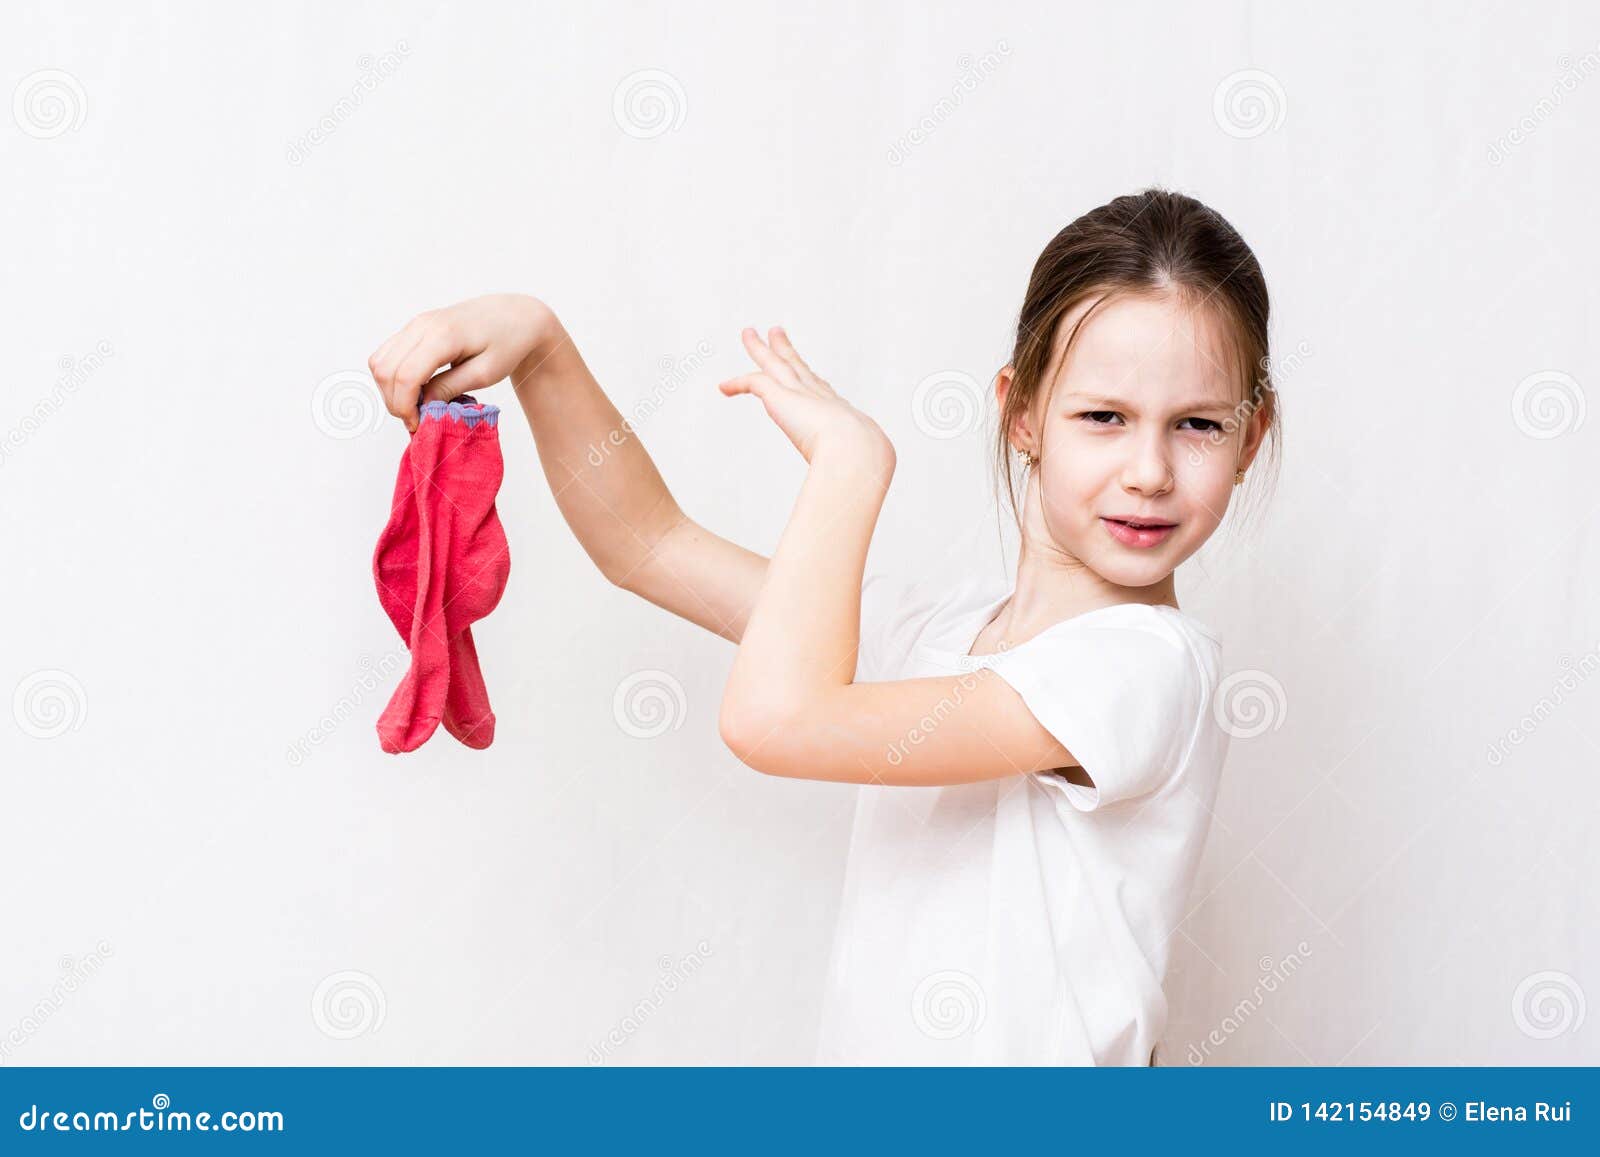 Девочка нюхает трусы. Вонючие носки девочек. Девочка с трусами в руках. Дети в грязных носках девочки. Девочка надевает носки.